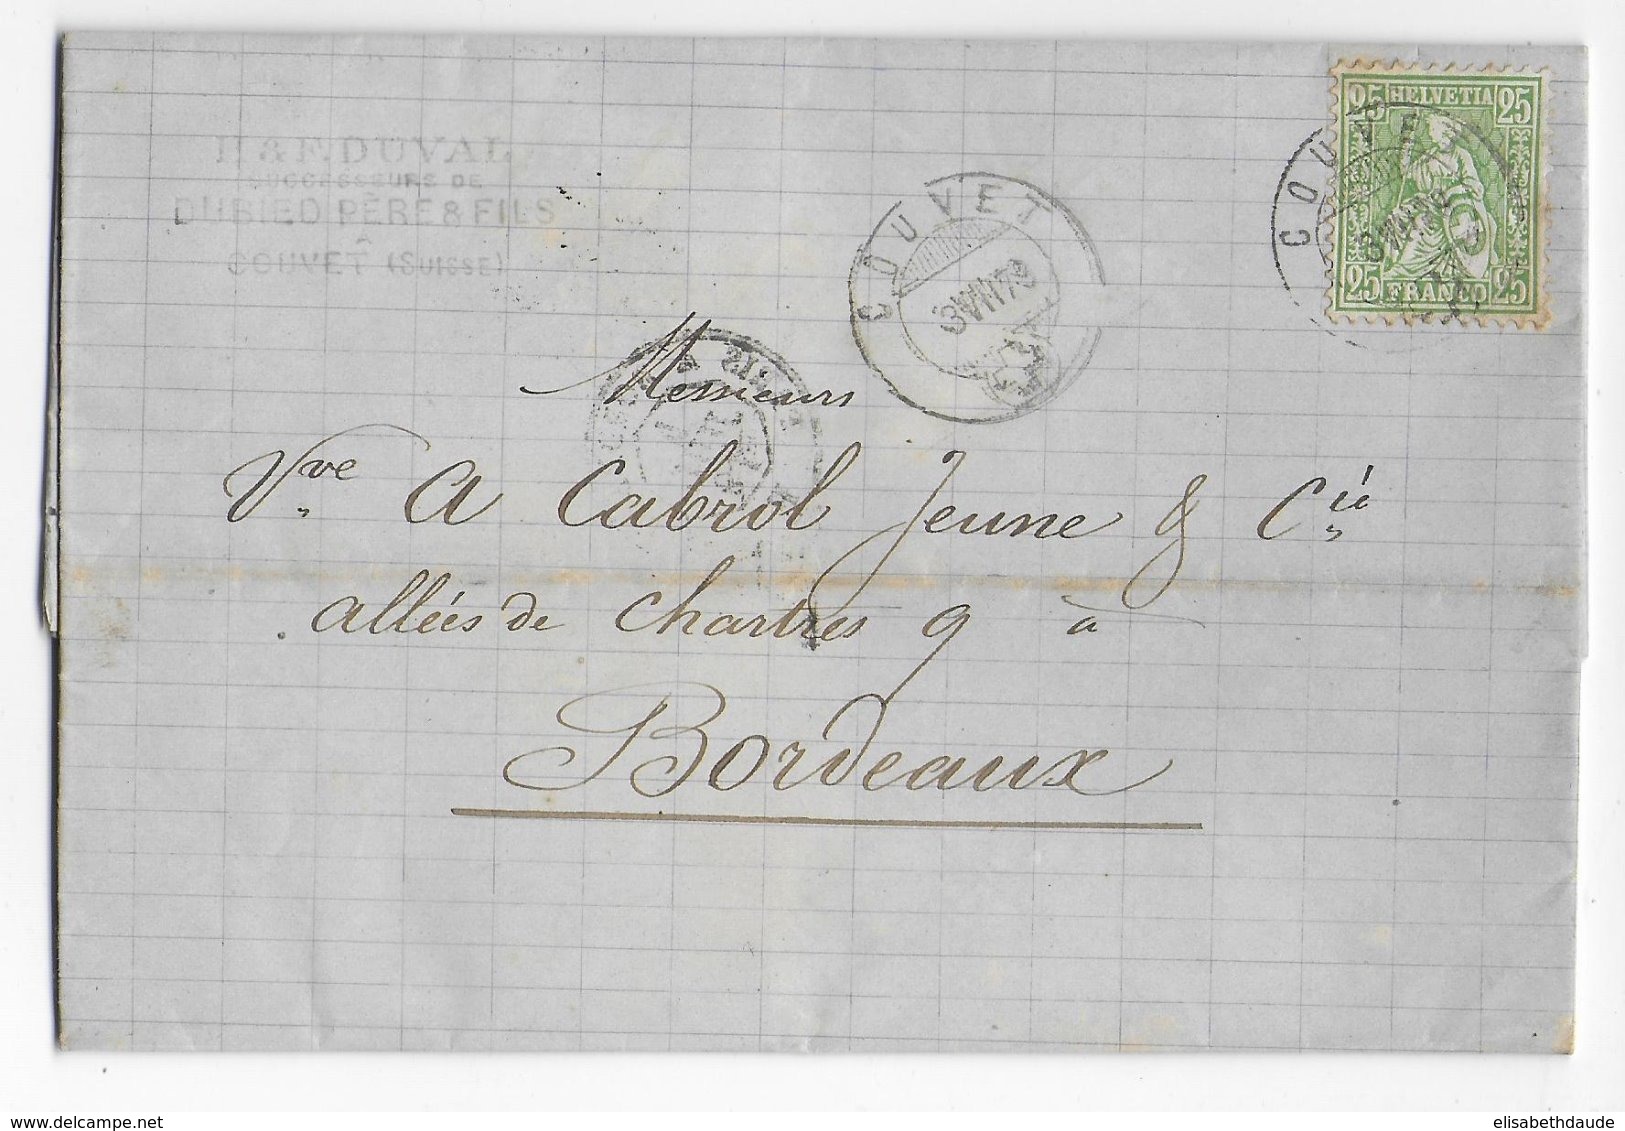 SUISSE - 1879 - LETTRE De COUVET => BORDEAUX - TARIF 25c ! - Covers & Documents